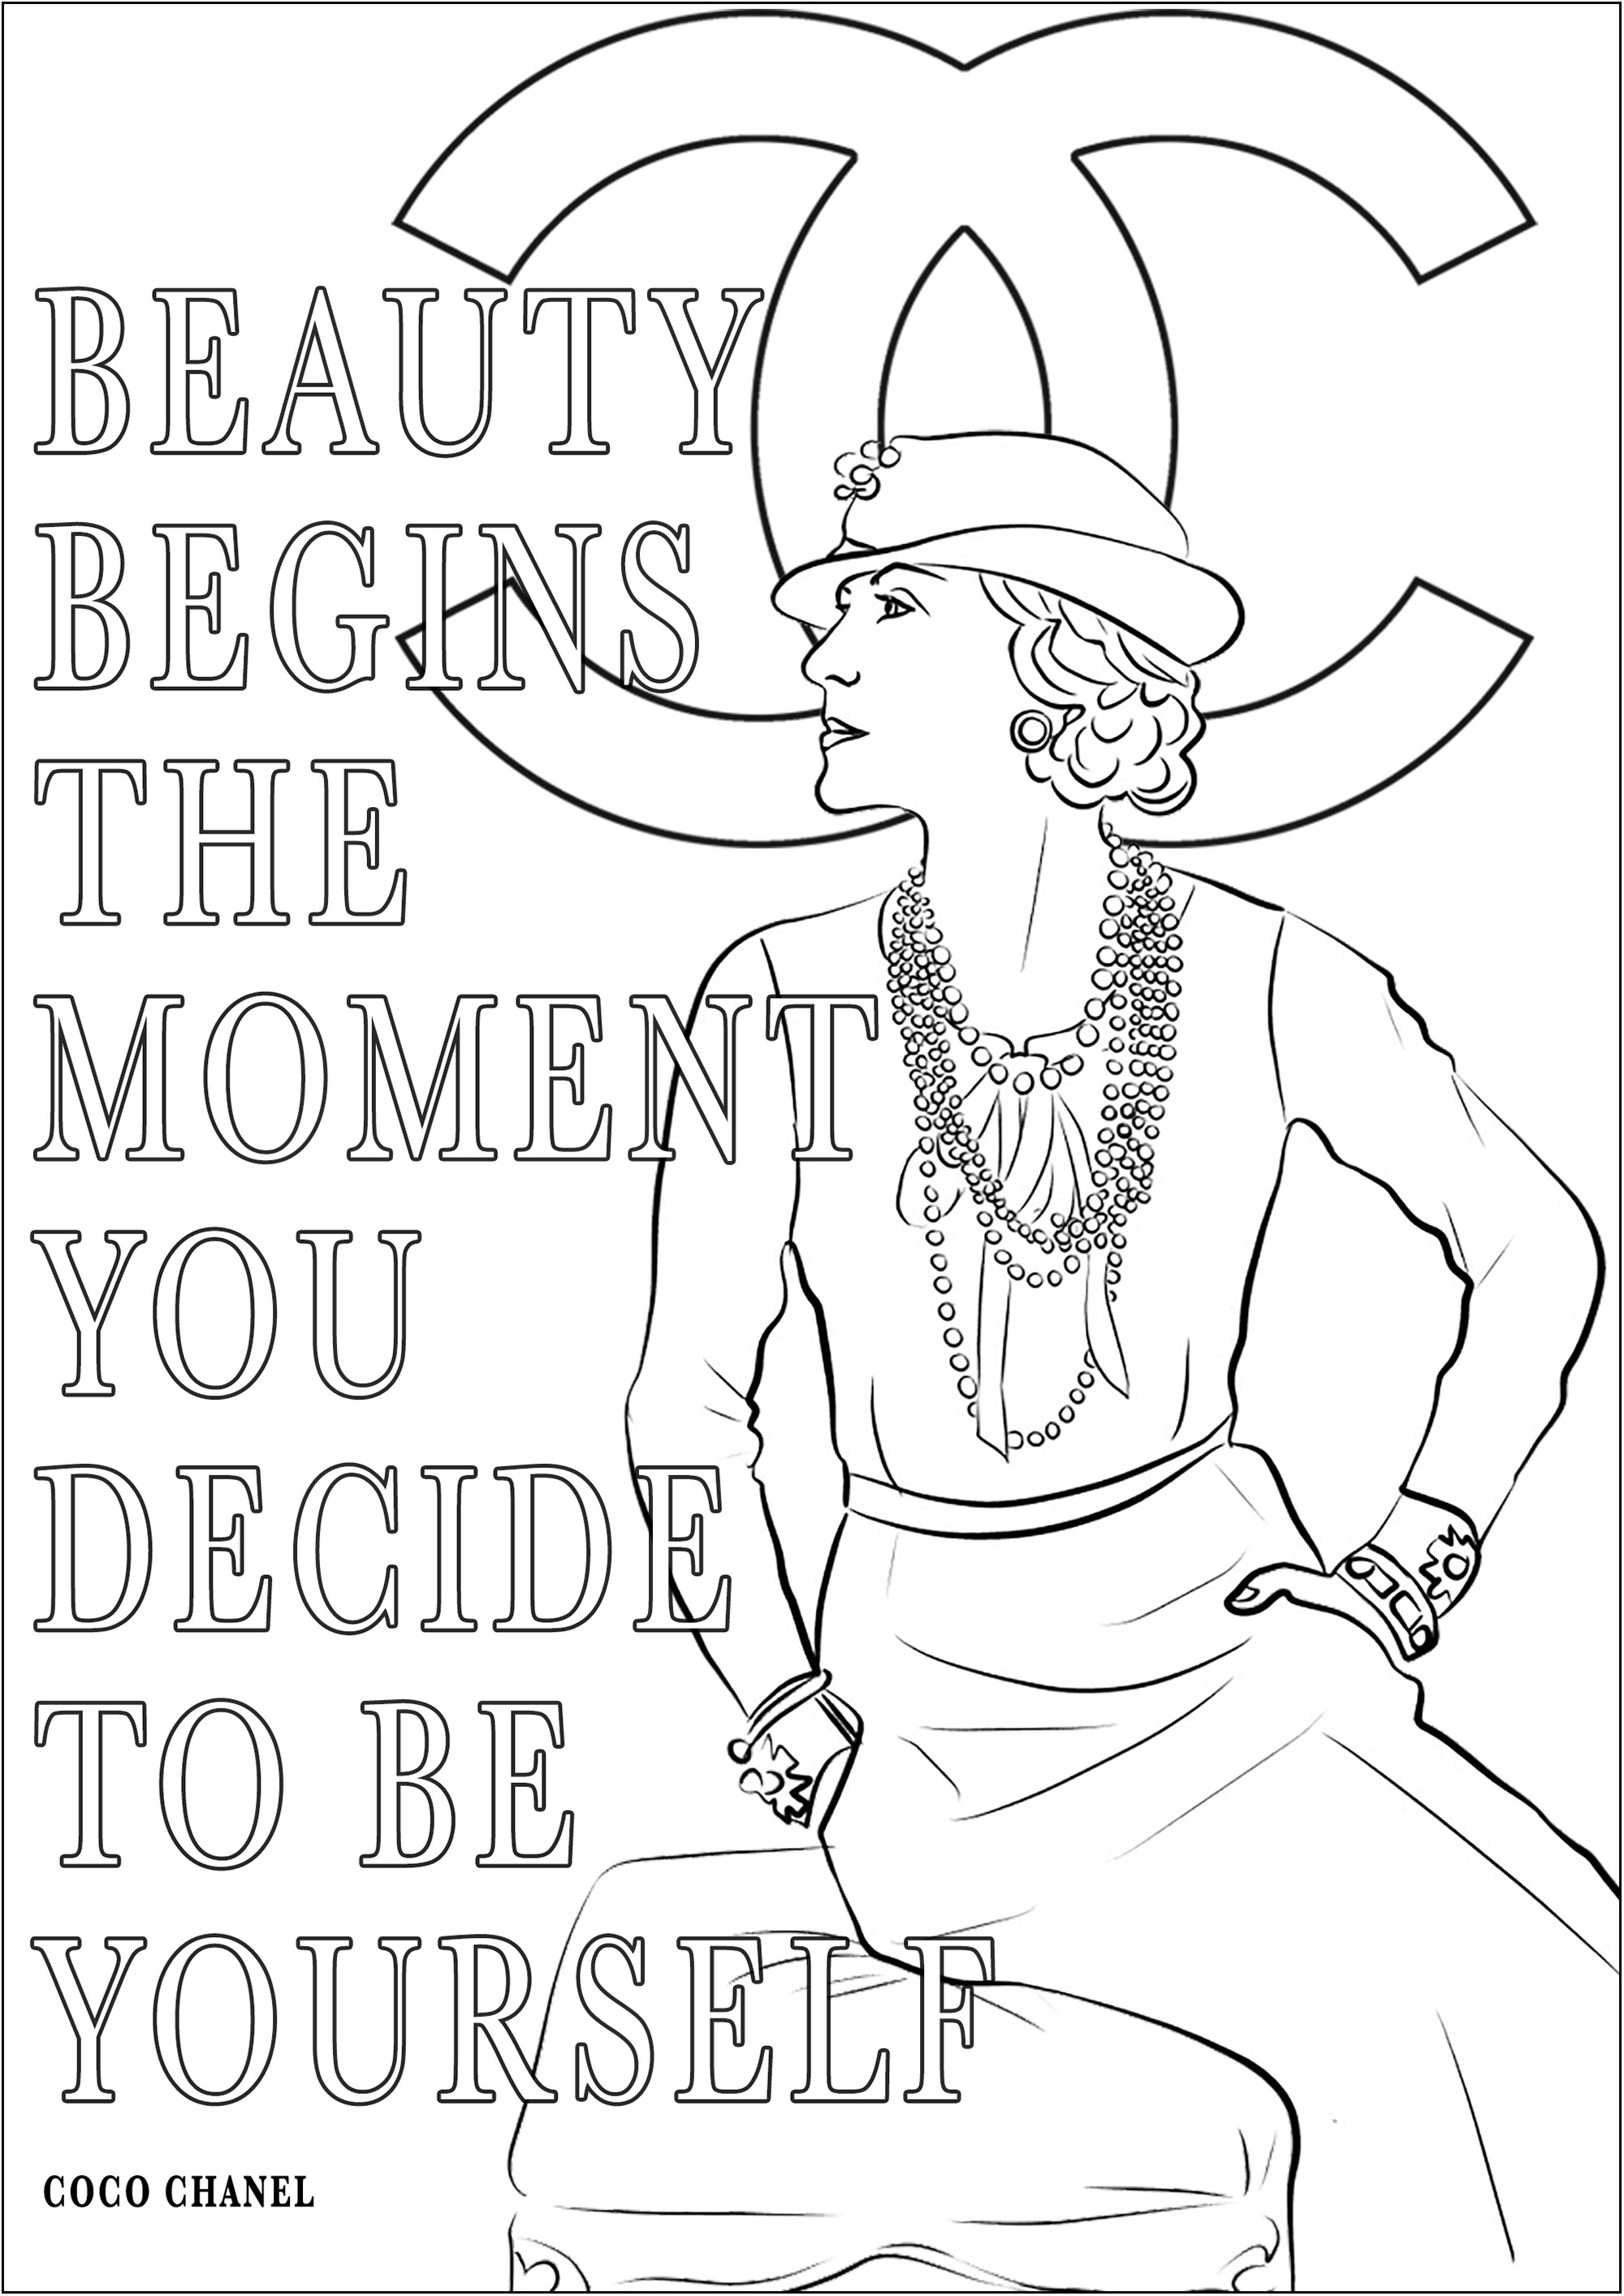 Coco Chanel und sein Zitat 'Schönheit beginnt in dem Moment, in dem du dich entscheidest, du selbst zu sein'. Es bedeutet 'Schönheit beginnt in dem Moment, in dem du dich entscheidest, du selbst zu sein'.Die 1883 geborene Coco Chanel war eine revolutionäre französische Modeschöpferin, die mit ihren zeitlosen Kreationen wie dem berühmten Chanel-Anzug und dem kleinen Schwarzen die Branche veränderte.